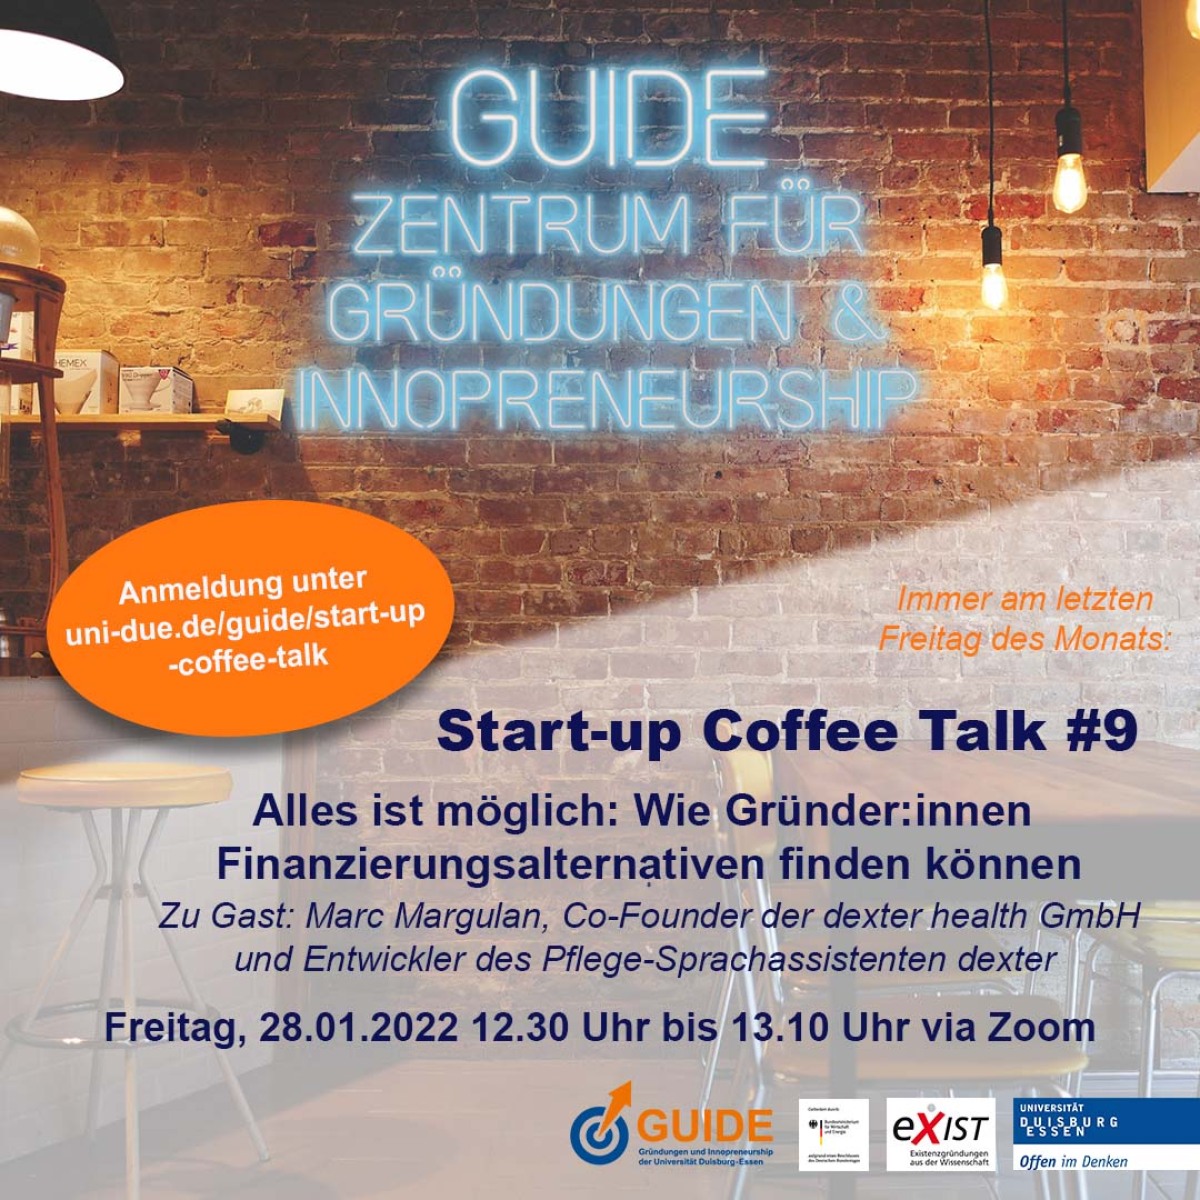 Start-up Coffee Talk am 28.01.22 zum Thema Finanzierungsalternativen